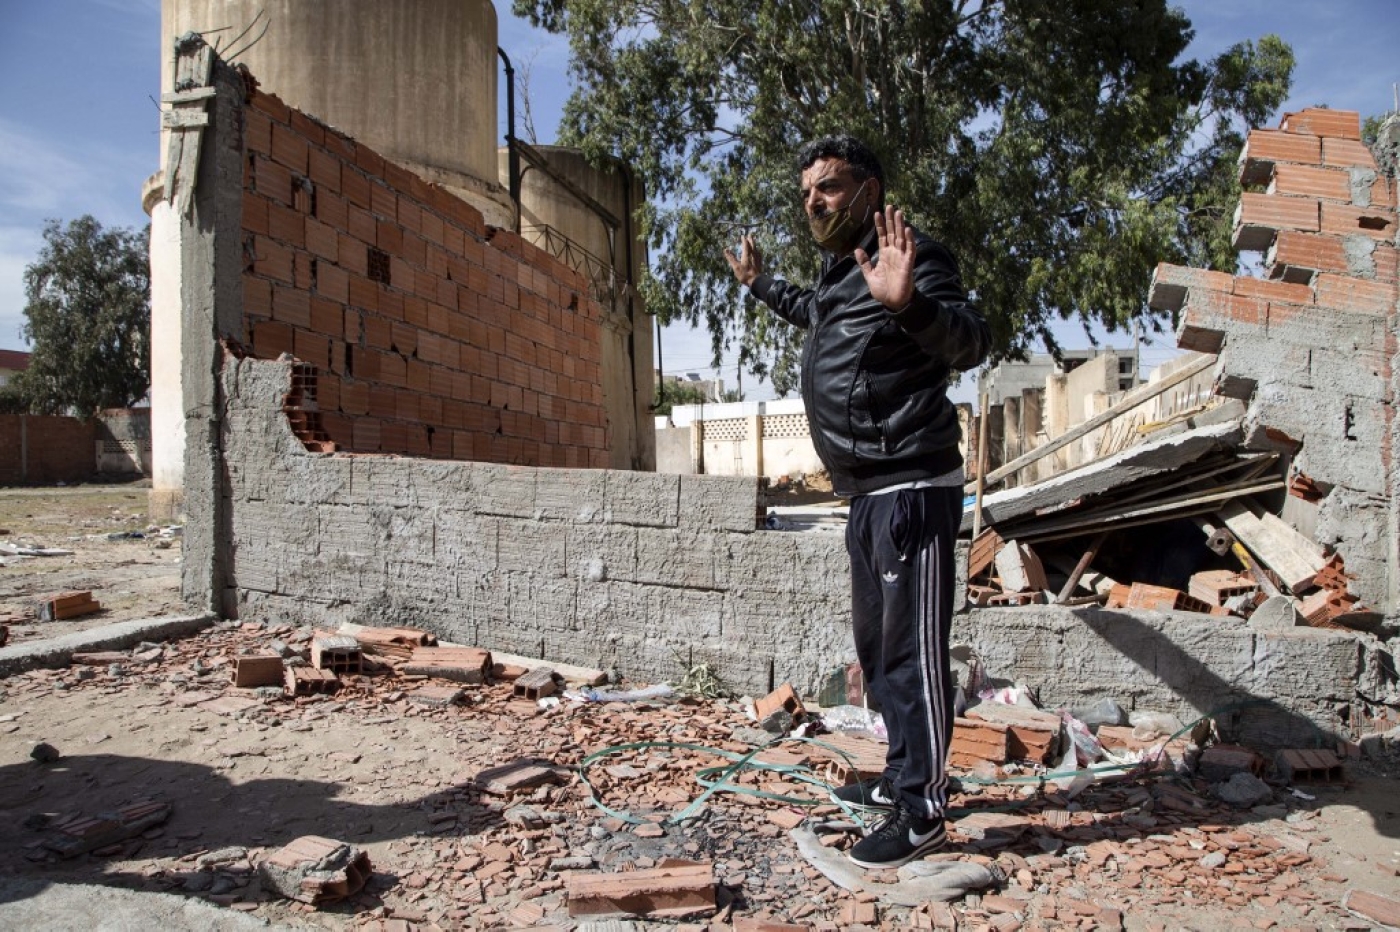 Un homme se tient sur les lieux où un Tunisien de 49 ans est mort lorsque les autorités ont démoli un kiosque illégal, un jour plus tôt, dans la ville de Sbeitla, dans la province de Kasserine, le 14 octobre 2020 (AFP)